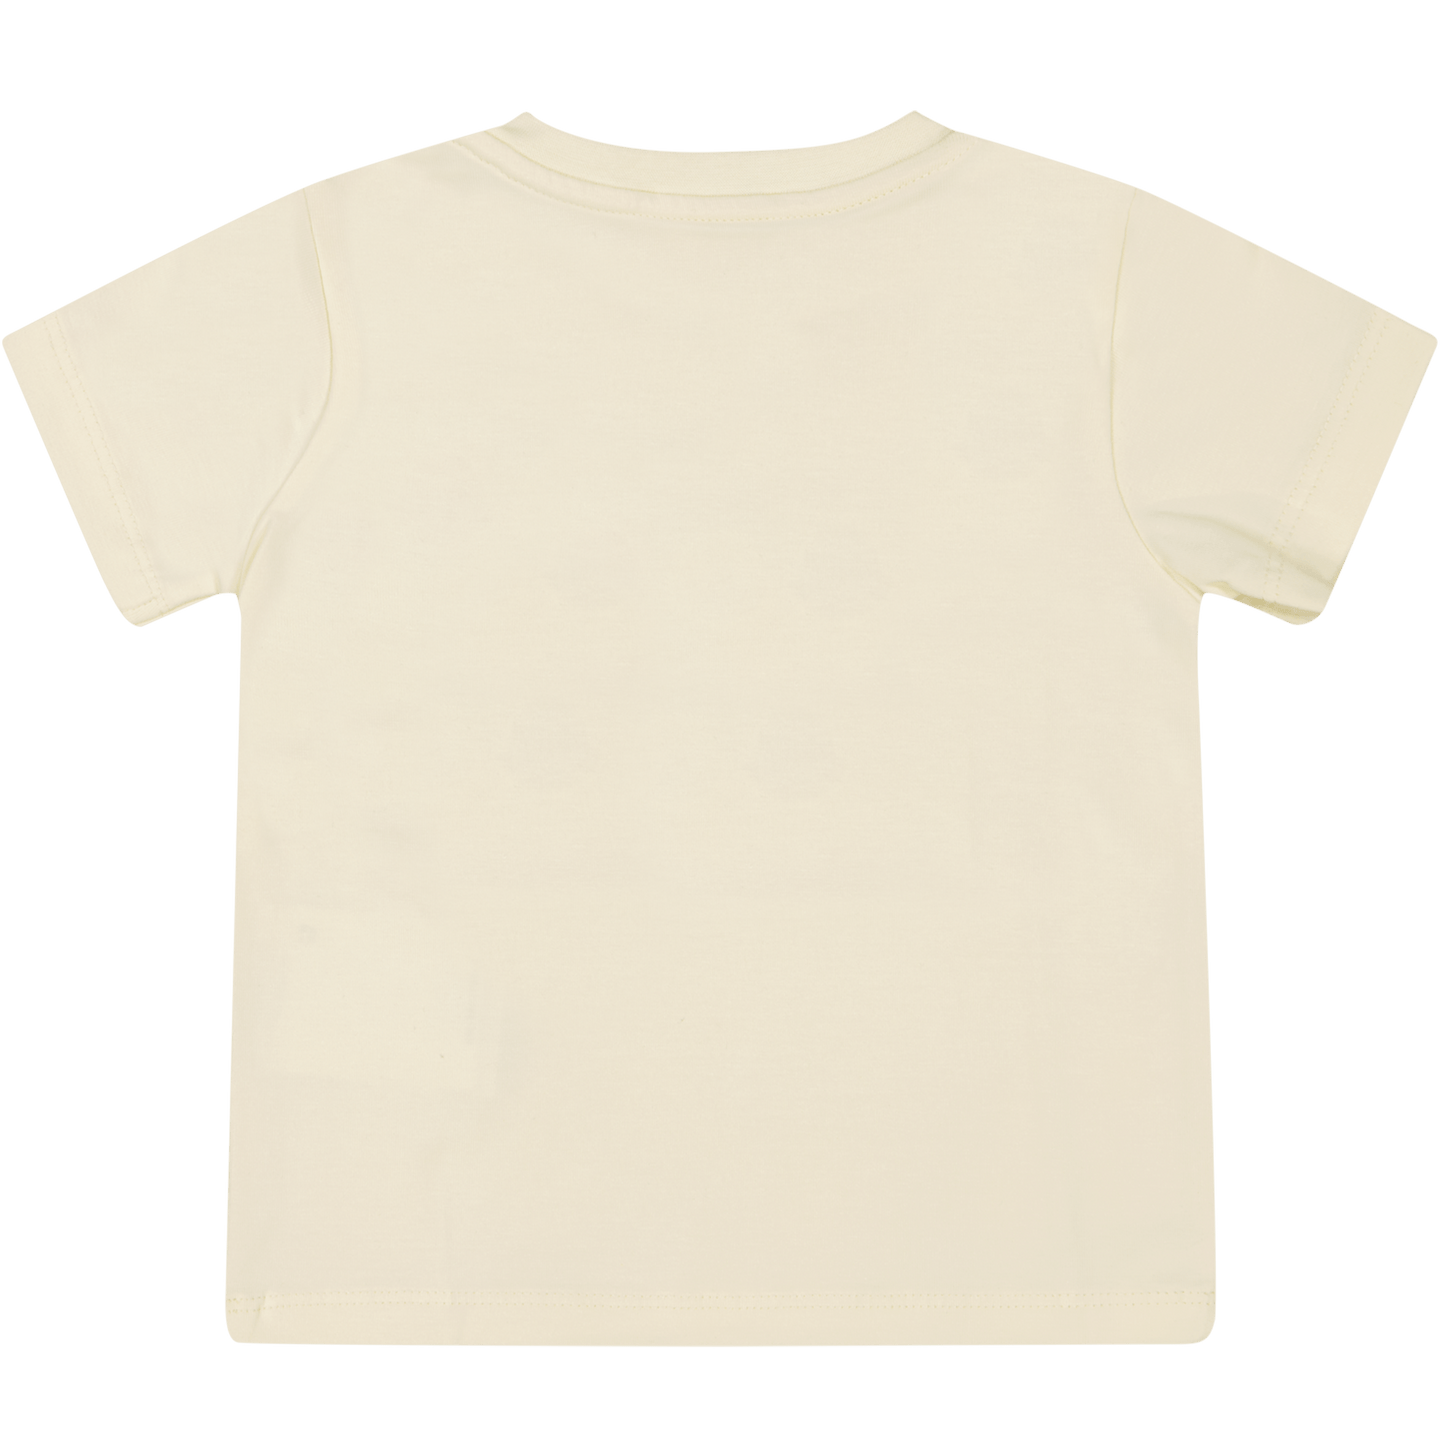 Moncler Baby Jongens T-Shirt Geel 3/6